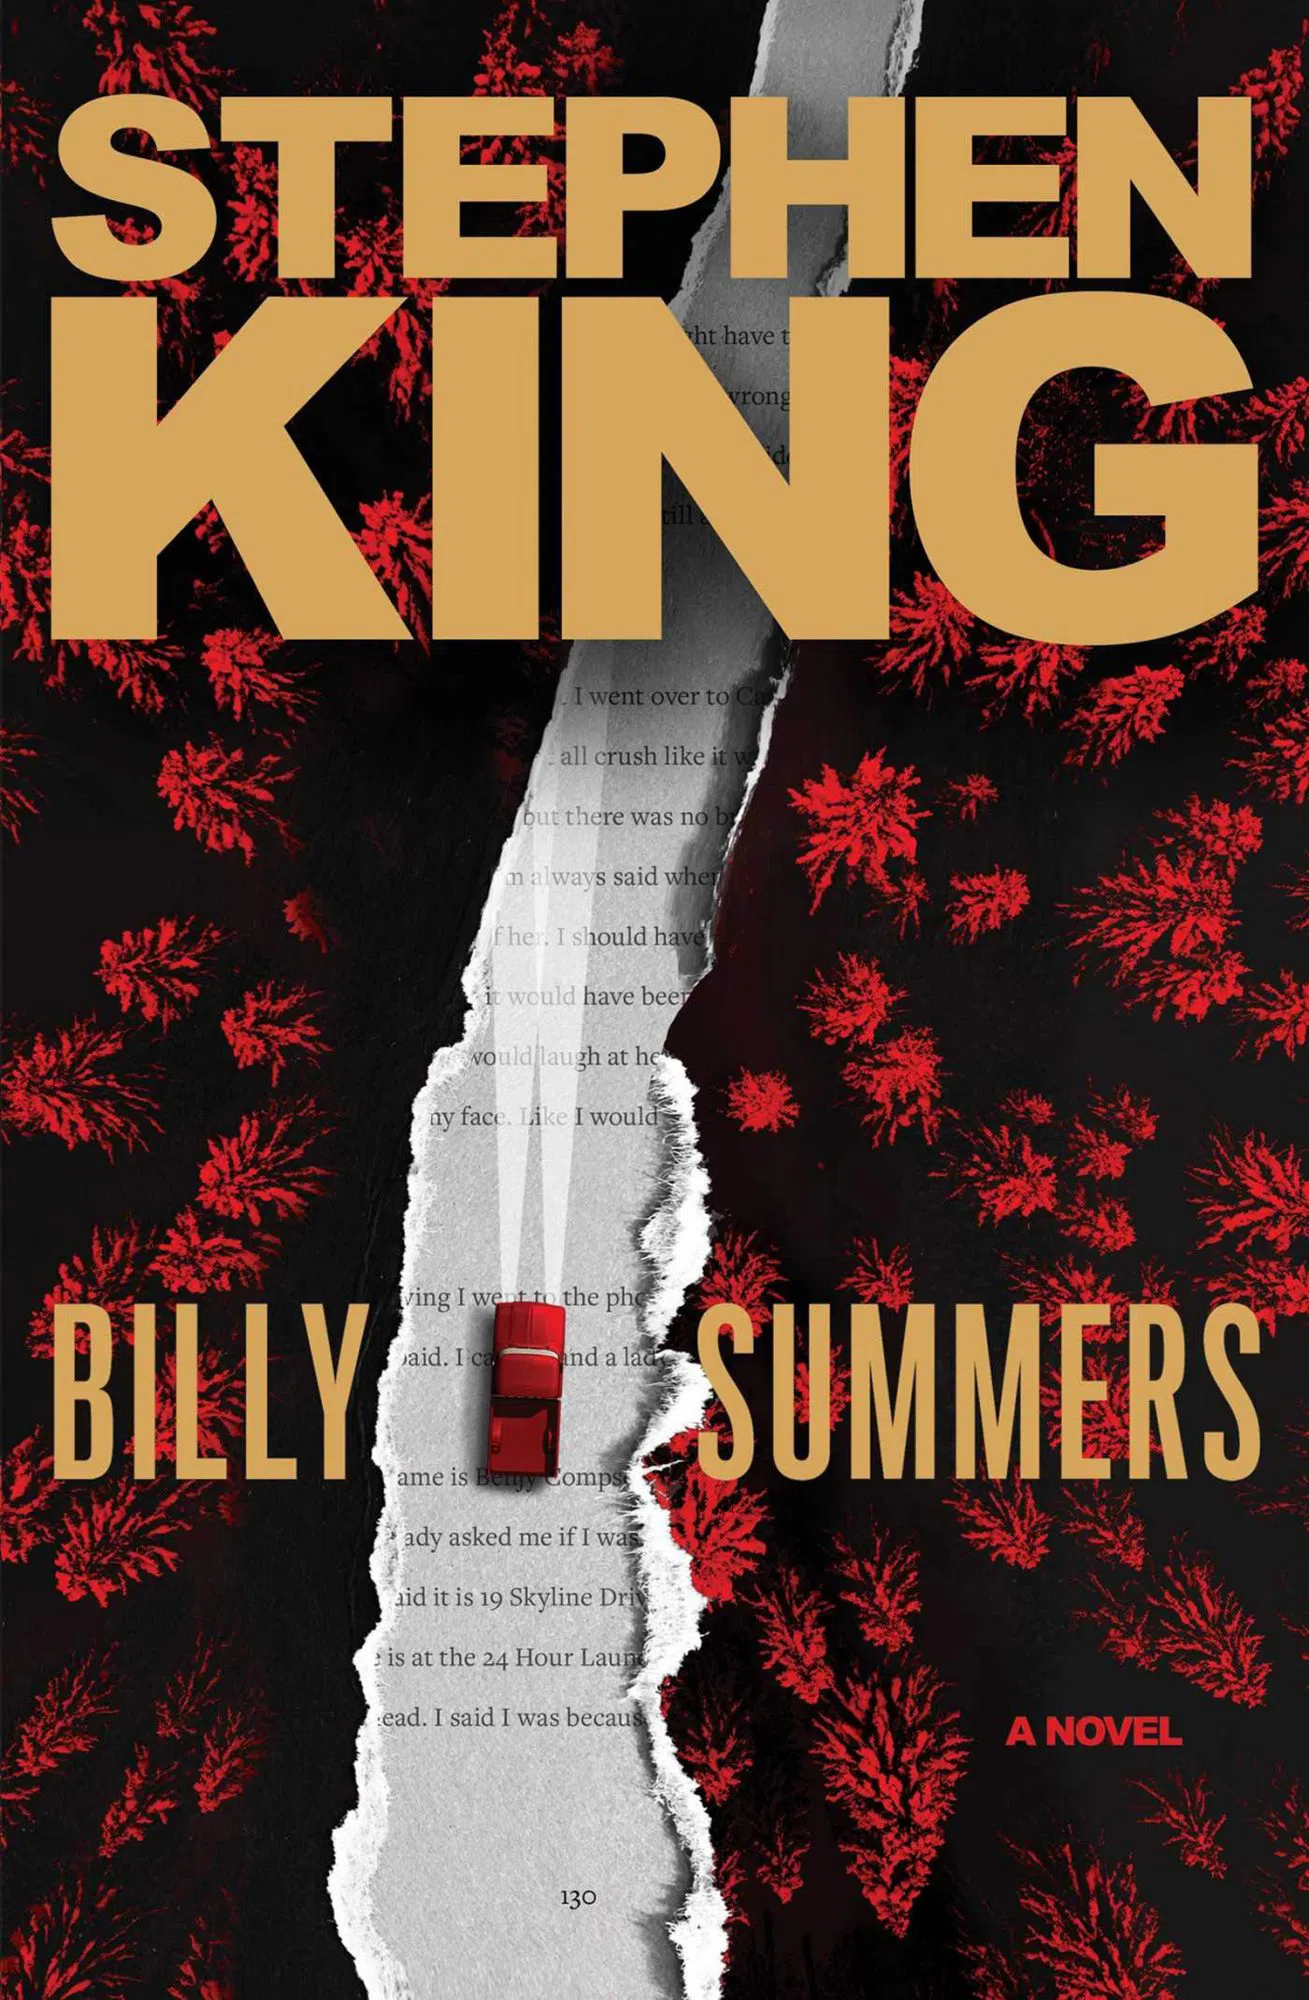 Изображение для Новая книга Стивена Кинга - «Билли Саммерс» сходу заняла первую строчку в списке бестселлеров Нью-Йорк Таймс